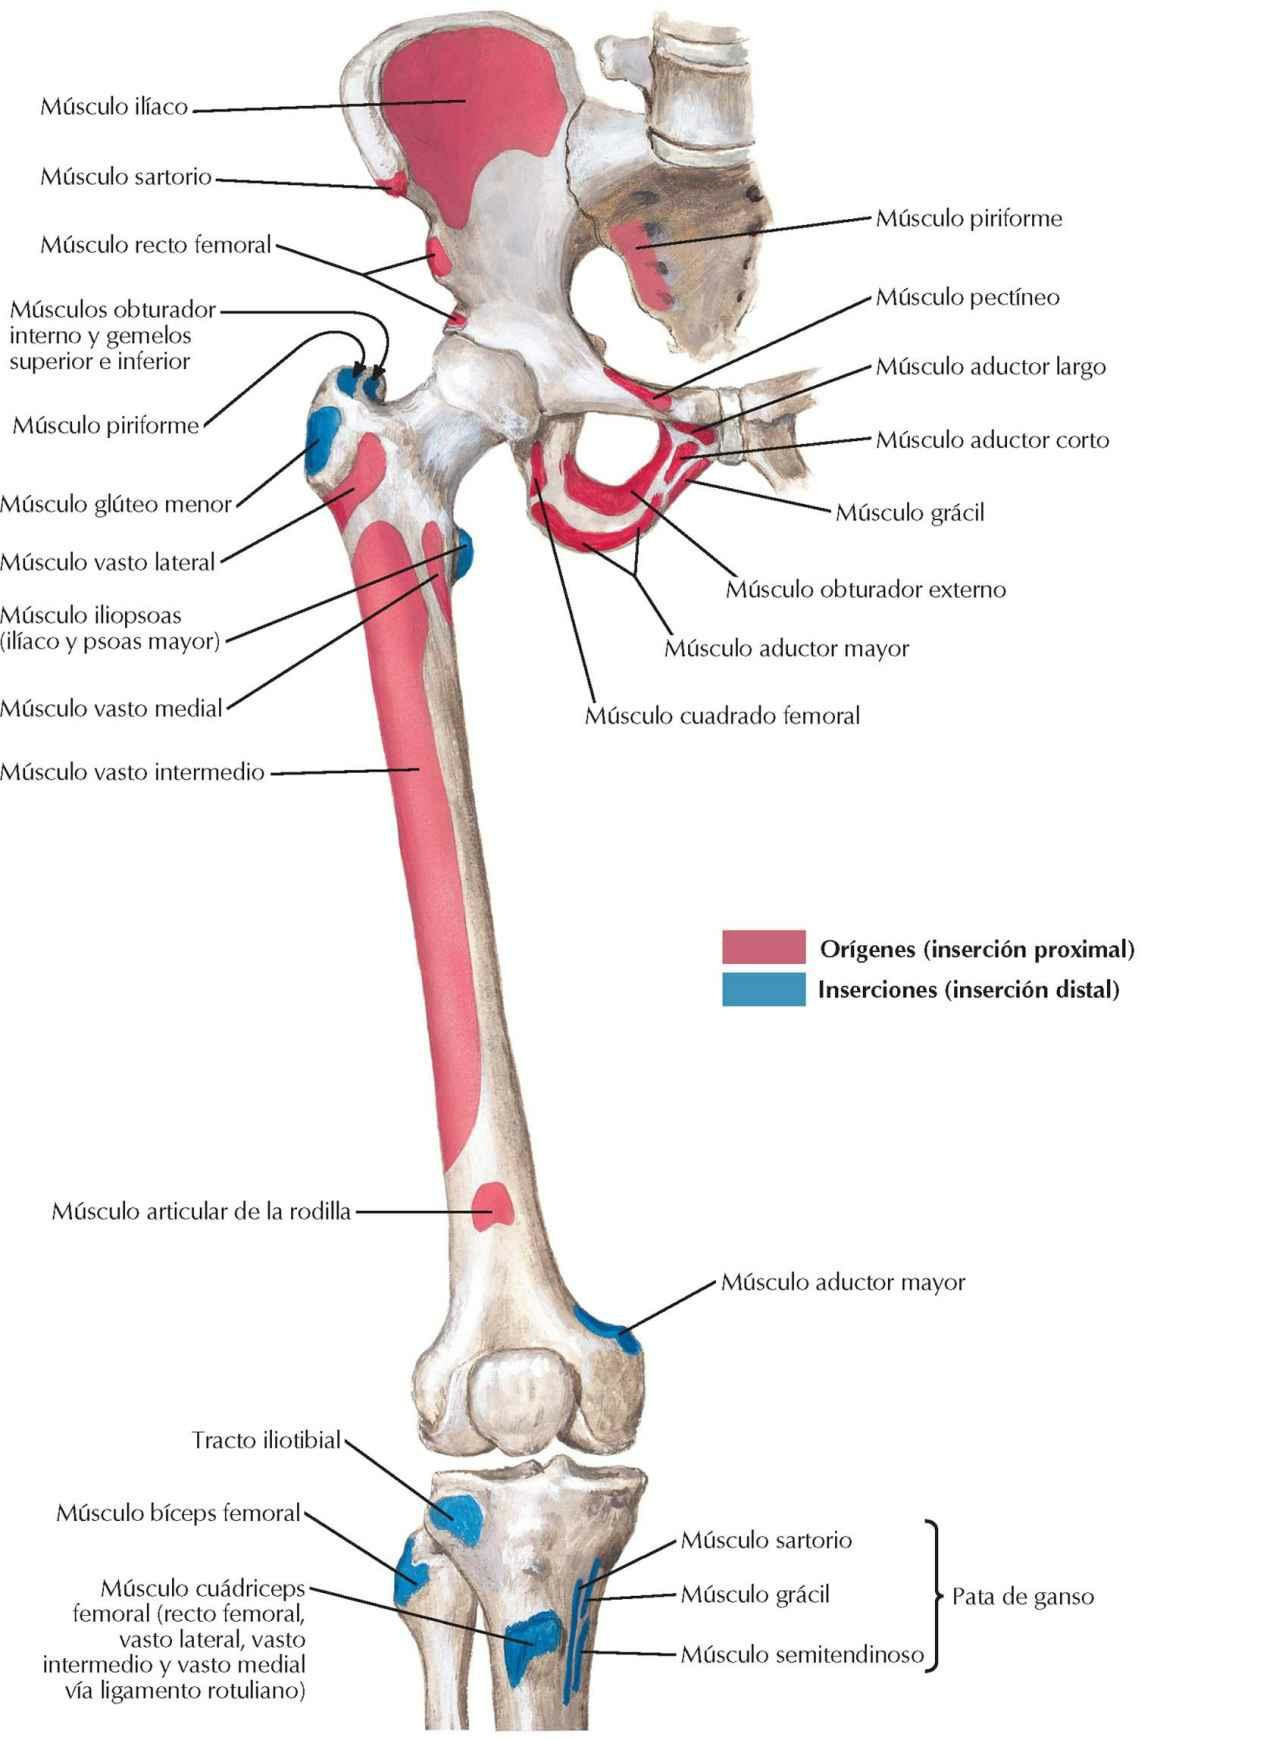 Inserciones óseas de los músculos de cadera y muslo: visión anterior